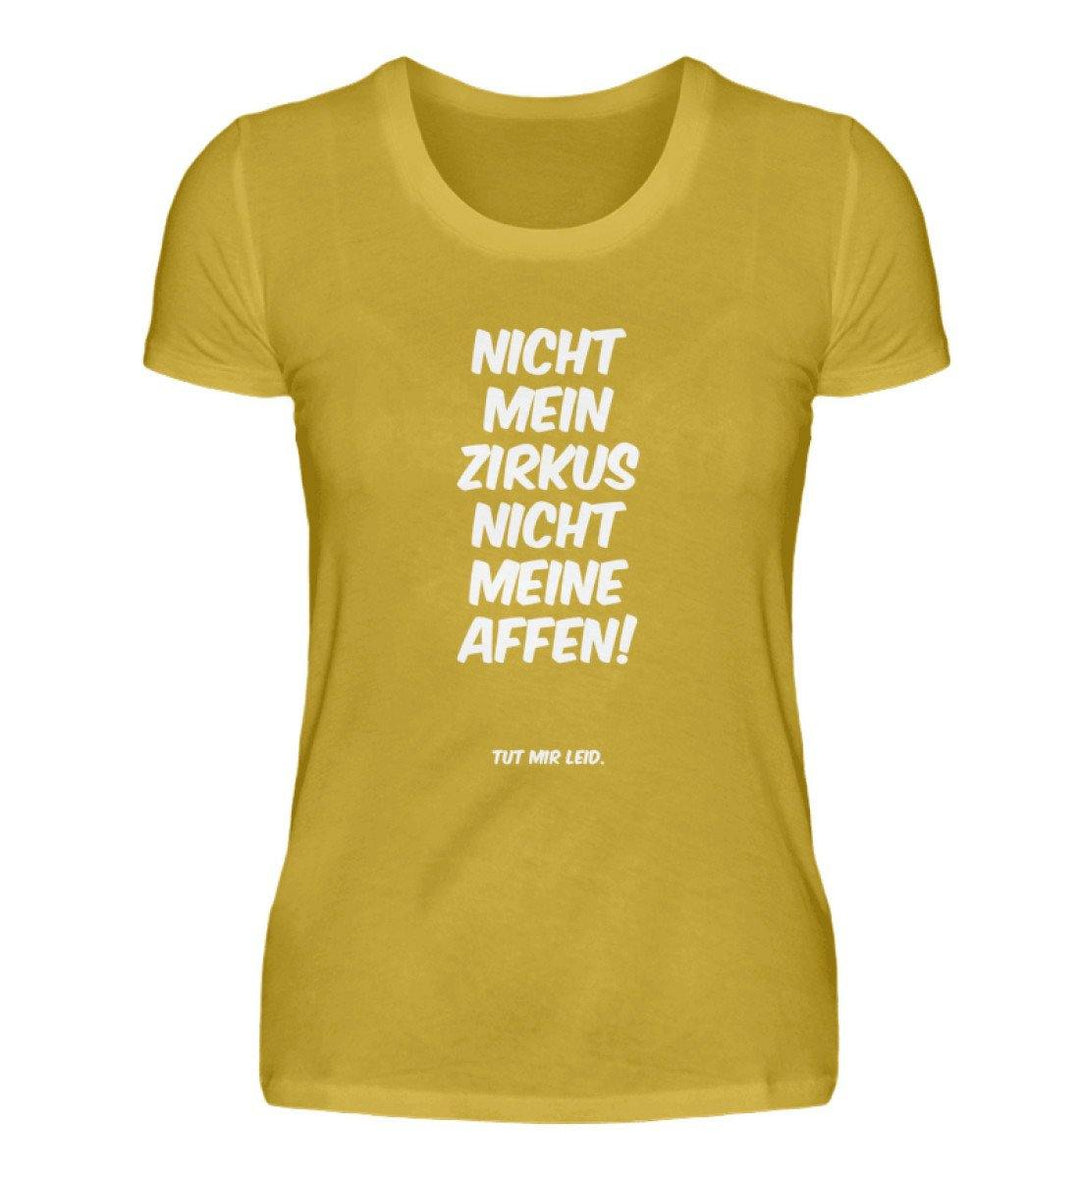 Mein Zirkus Affen - Words on Shirts - PR  - Damen Premiumshirt - Words on Shirts Sag es mit dem Mittelfinger Shirts Hoodies Sweatshirt Taschen Gymsack Spruch Sprüche Statement